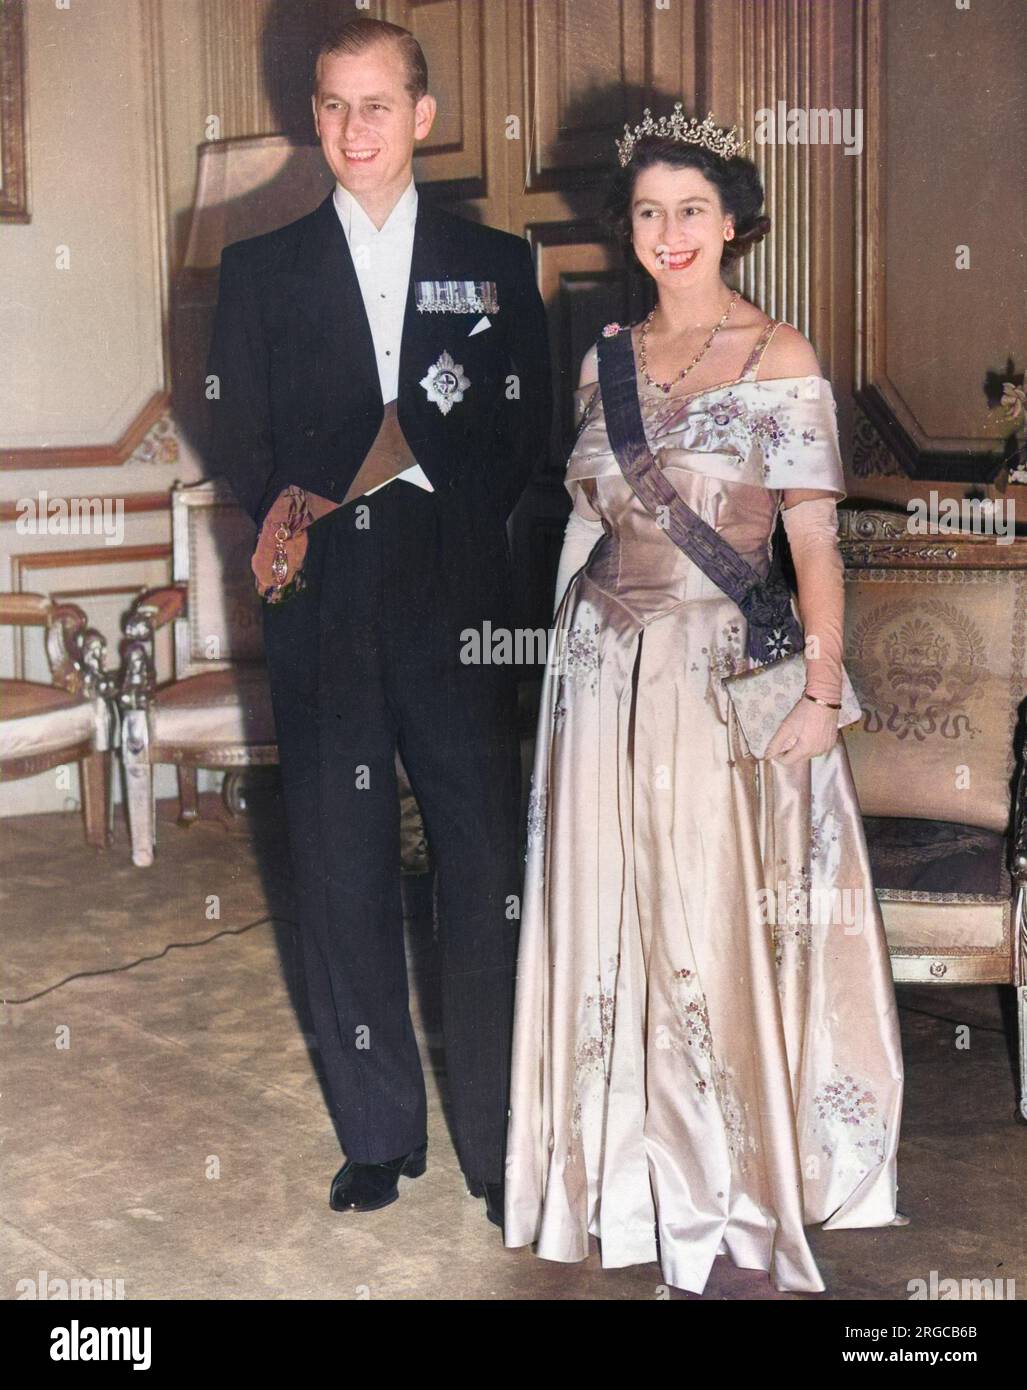 La regina Elisabetta II, quando la principessa Elisabetta, fece foto con suo marito, il principe Filippo, duca di Edimburgo, al Teatro dell'Opera di Parigi nel maggio 1948. Foto Stock